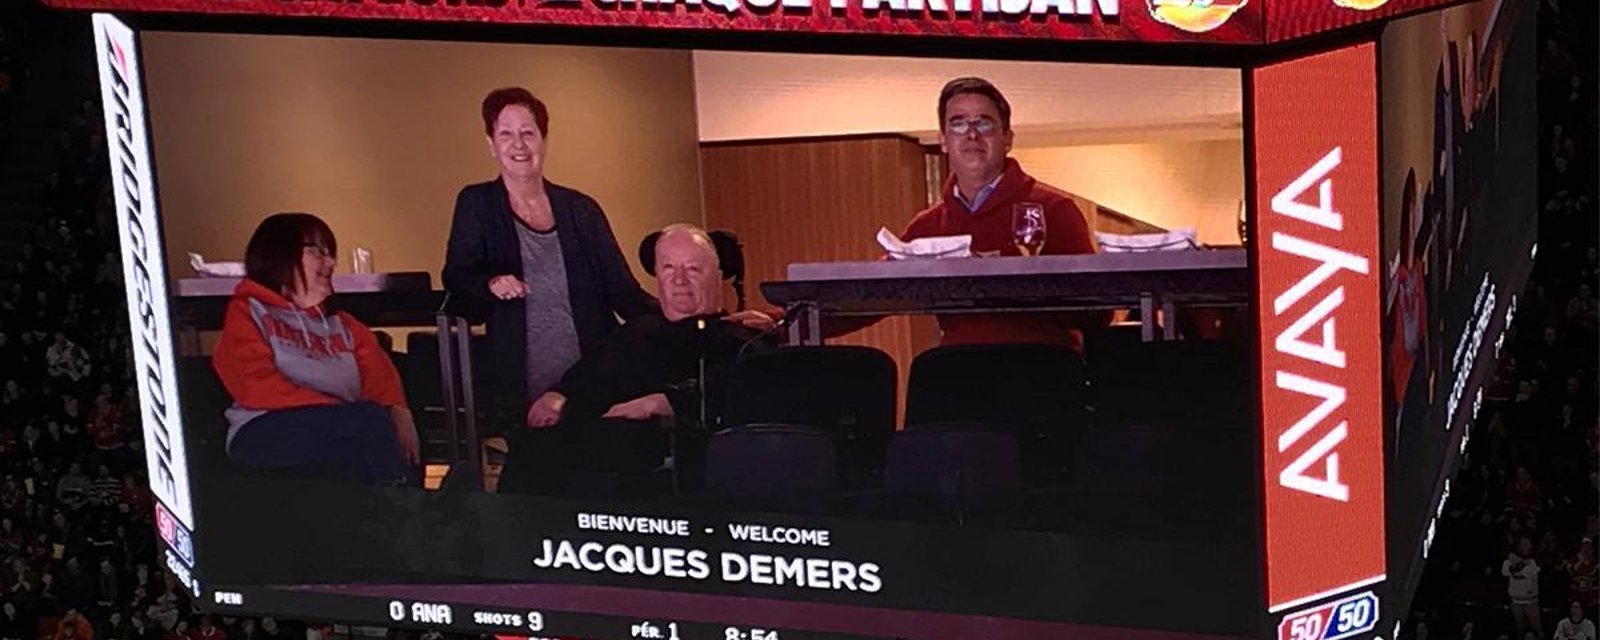 Jacques Demers fait une apparition remarquée au Centre Bell!